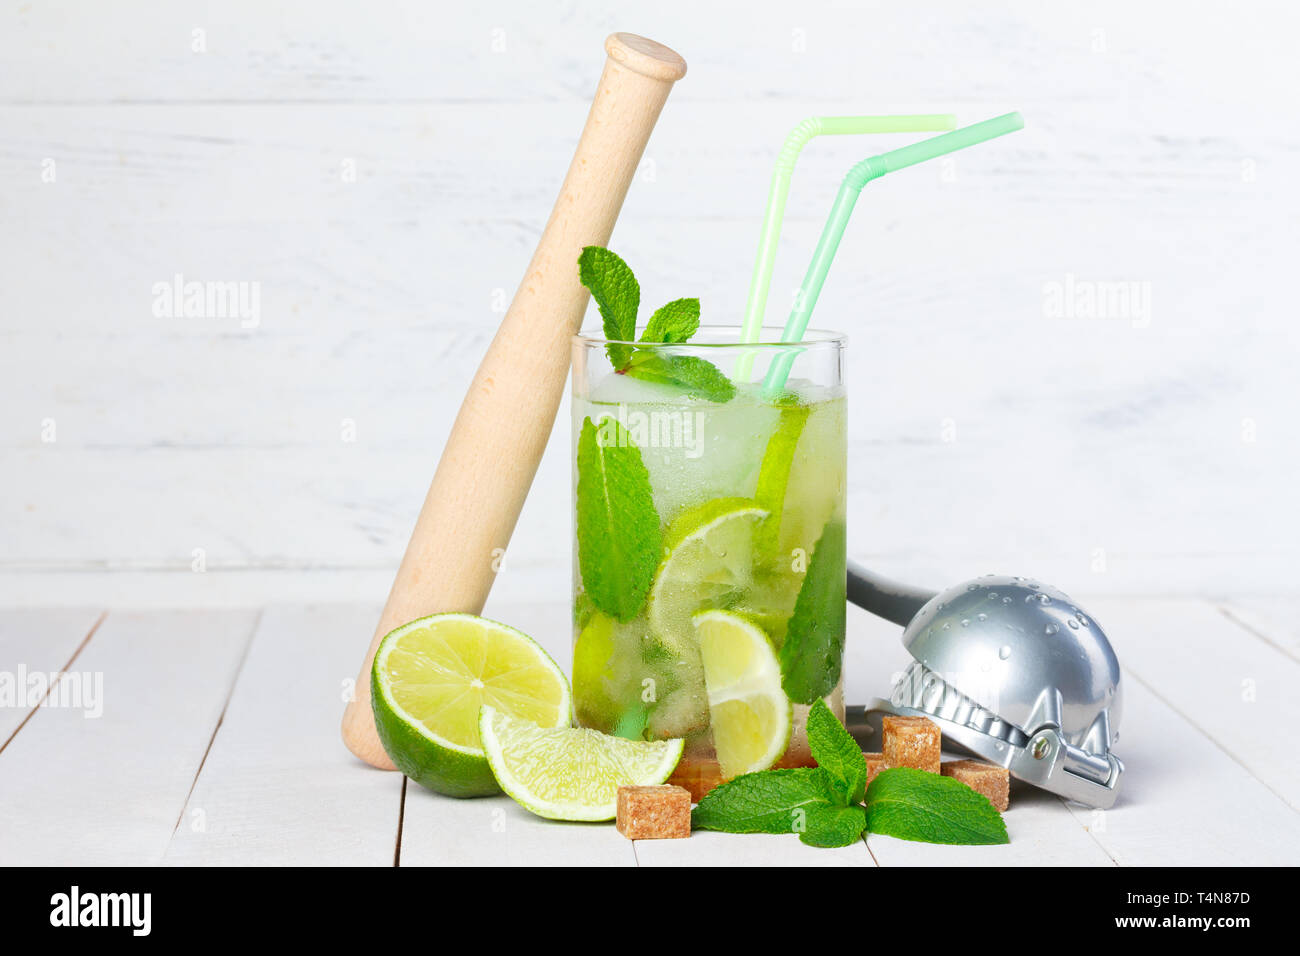 Lime e rum immagini e fotografie stock ad alta risoluzione - Alamy